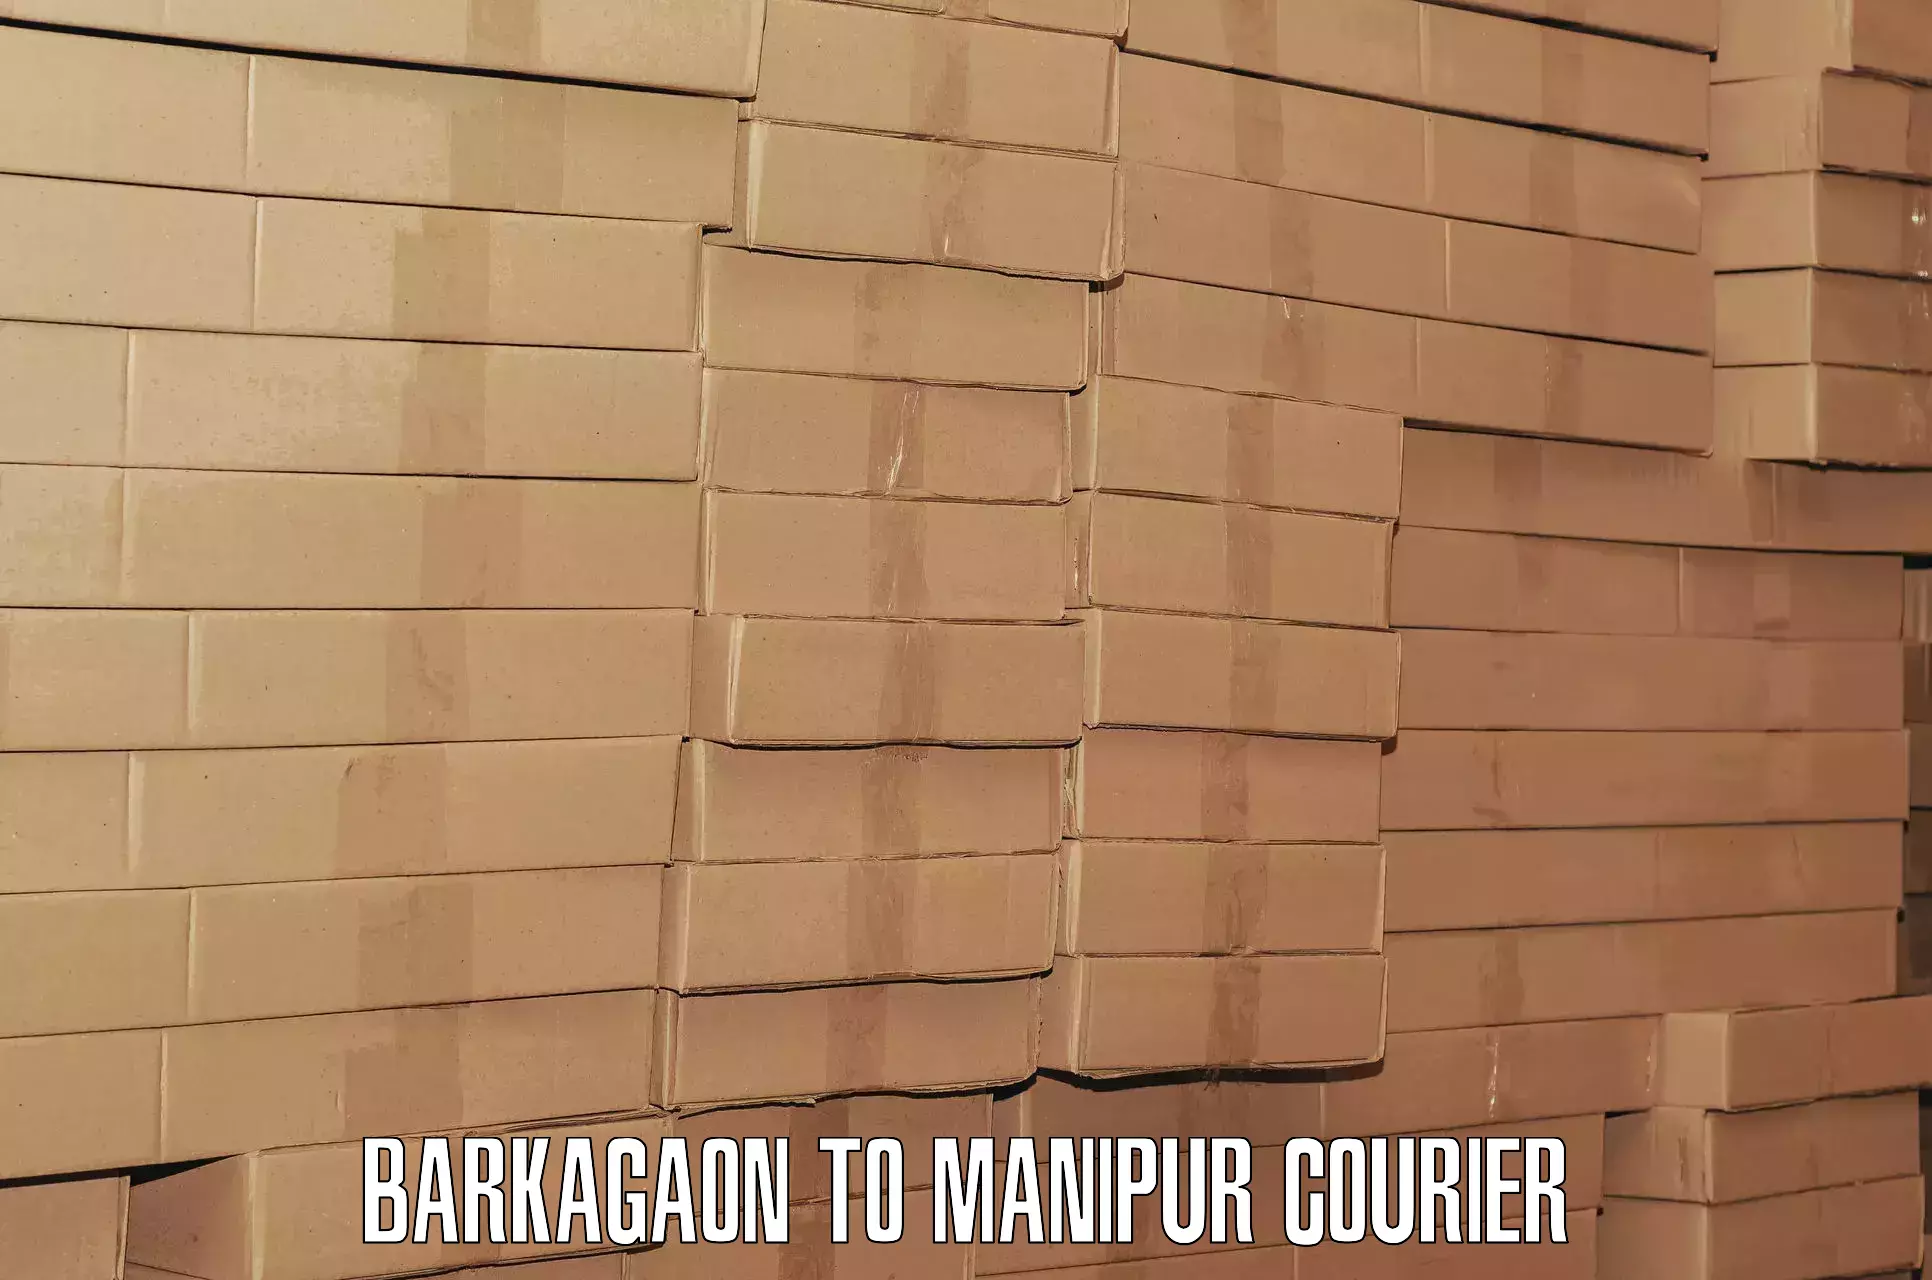 Door-to-door baggage service Barkagaon to Chandel